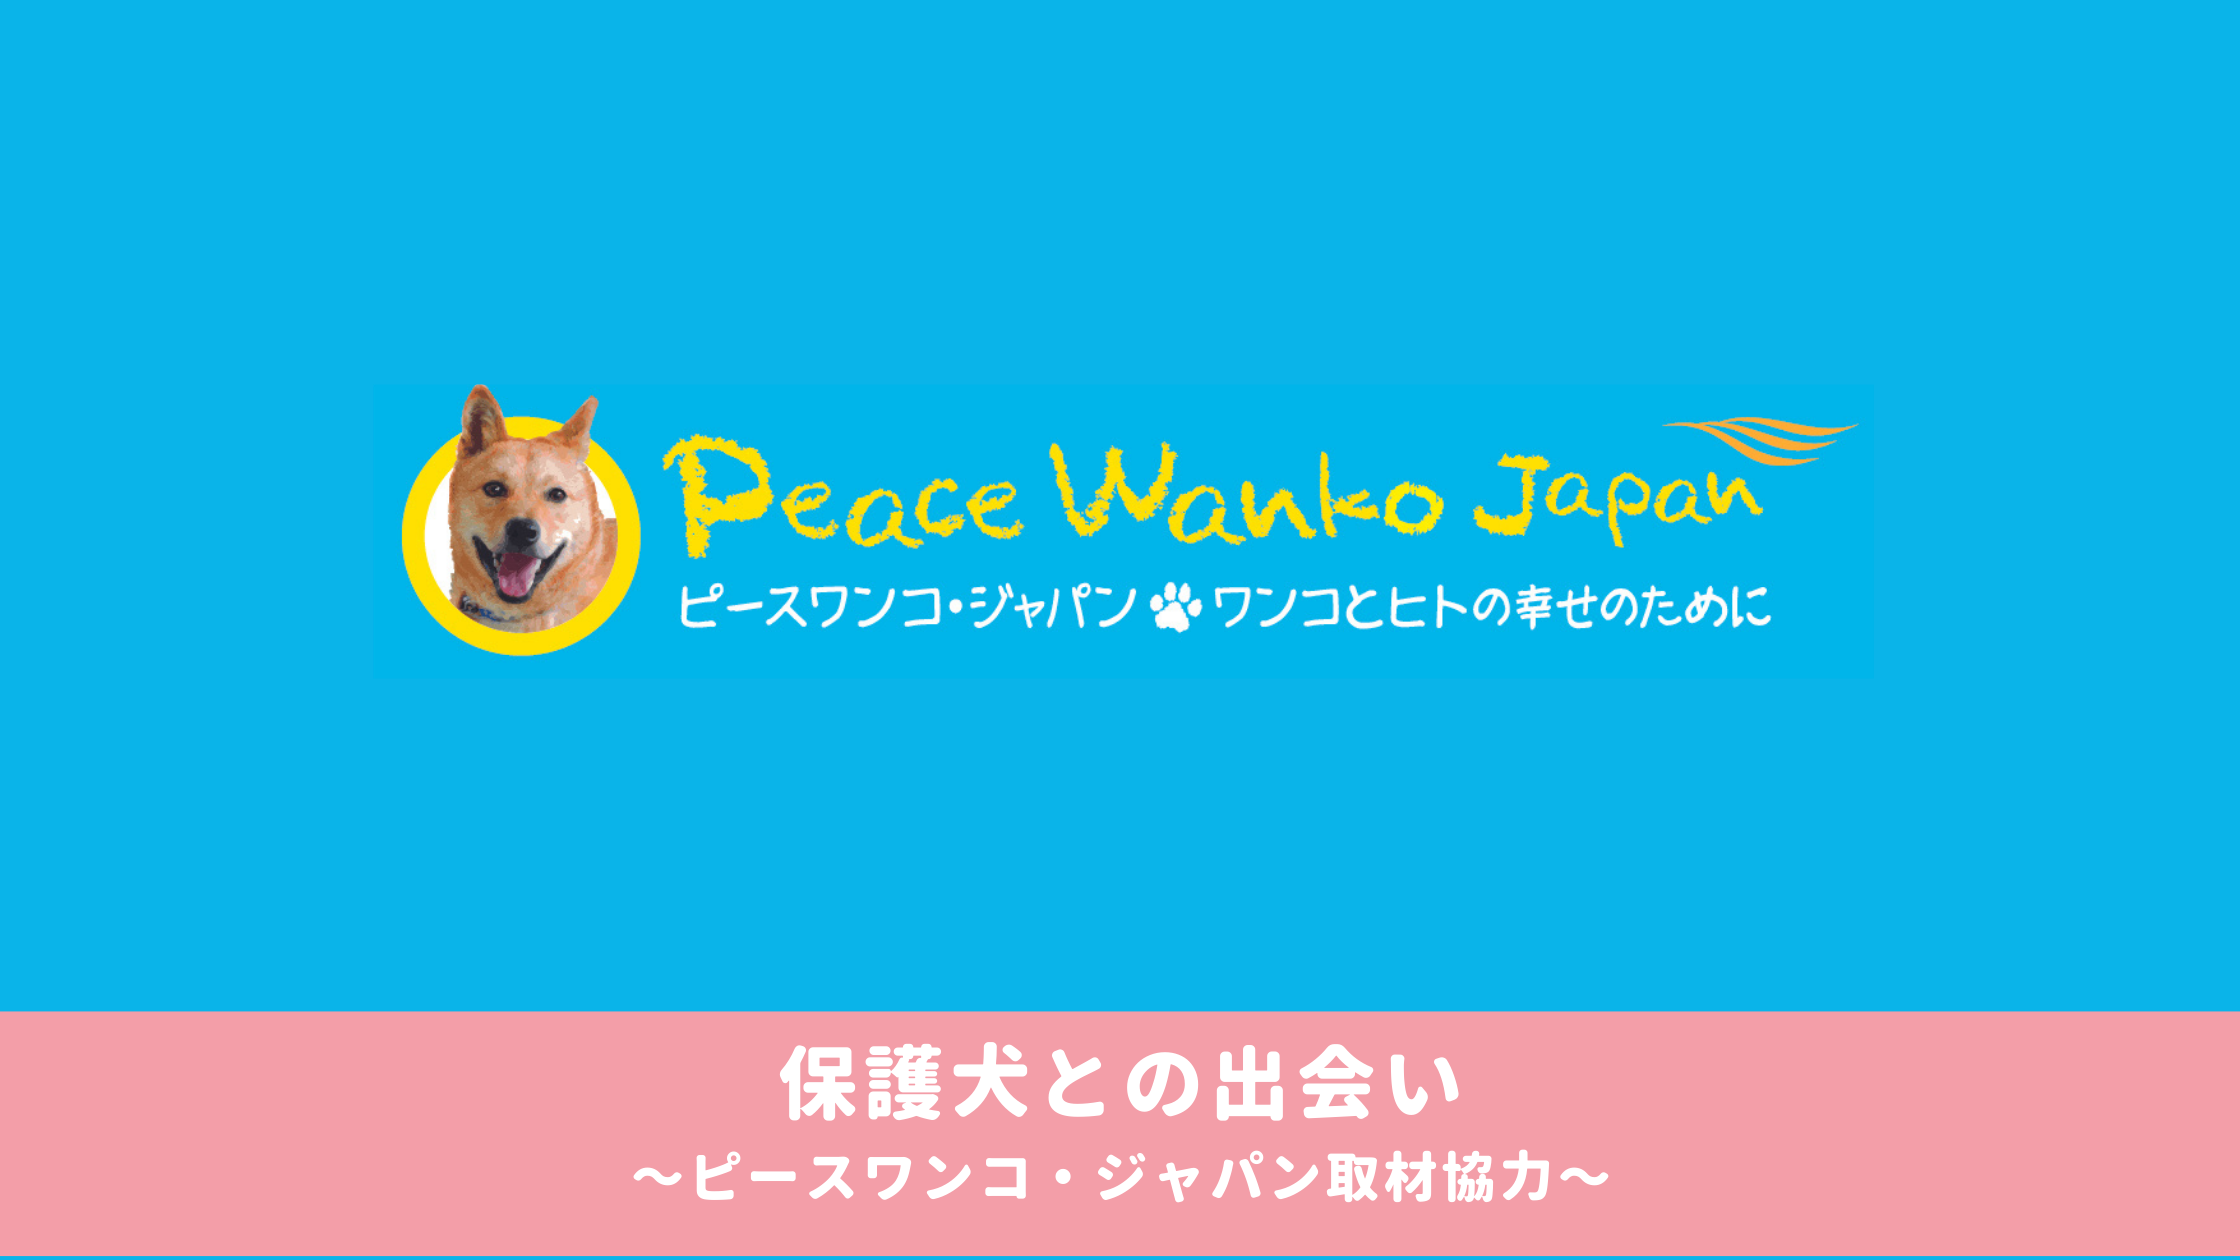 【読み物】 保護犬との出会い〜ピースワンコ・ジャパン取材協力〜